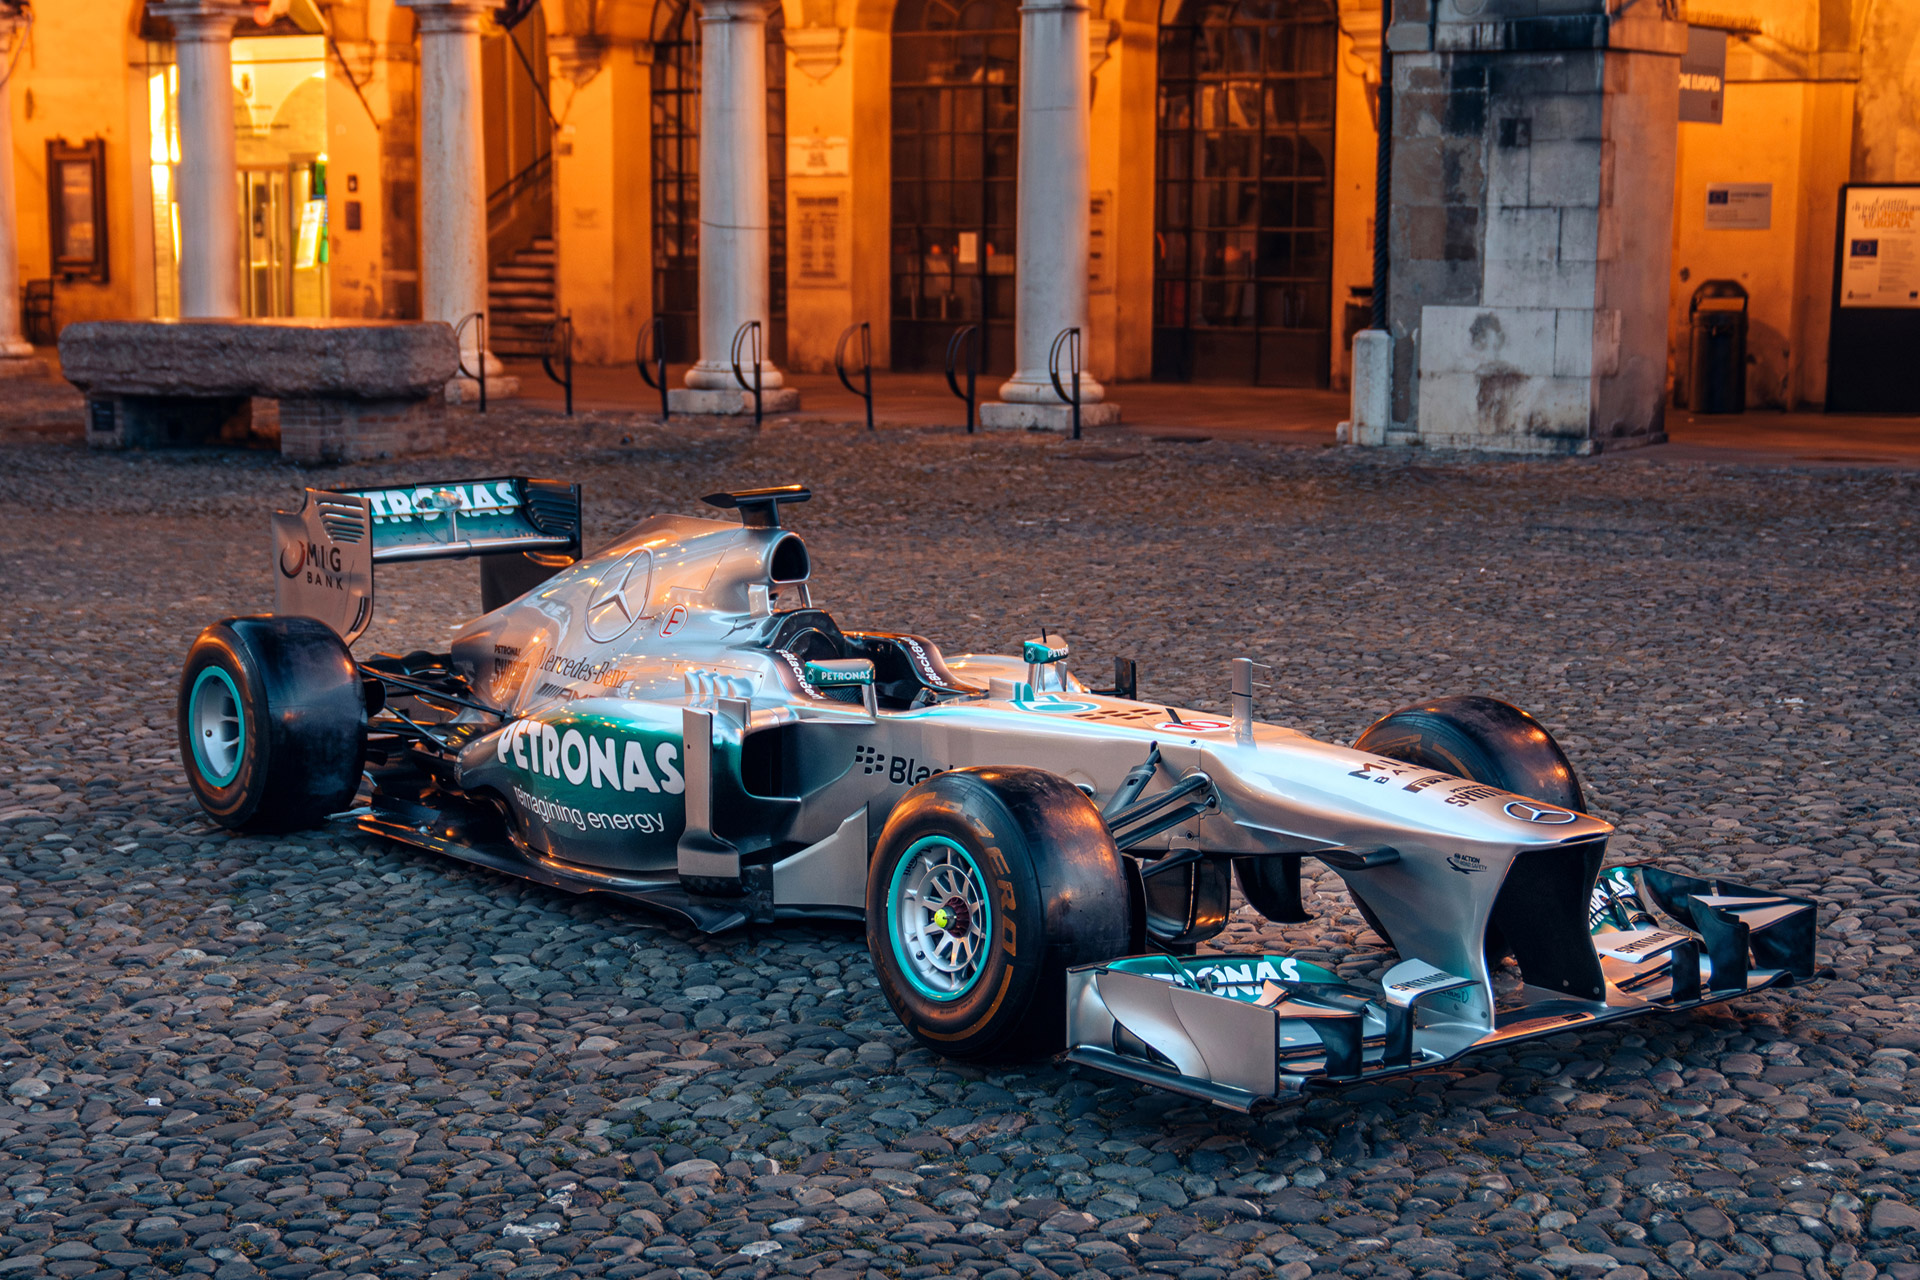 Гоночный автомобиль Mercedes-AMG Petronas F1 2013 года Льюиса Хэмилтона